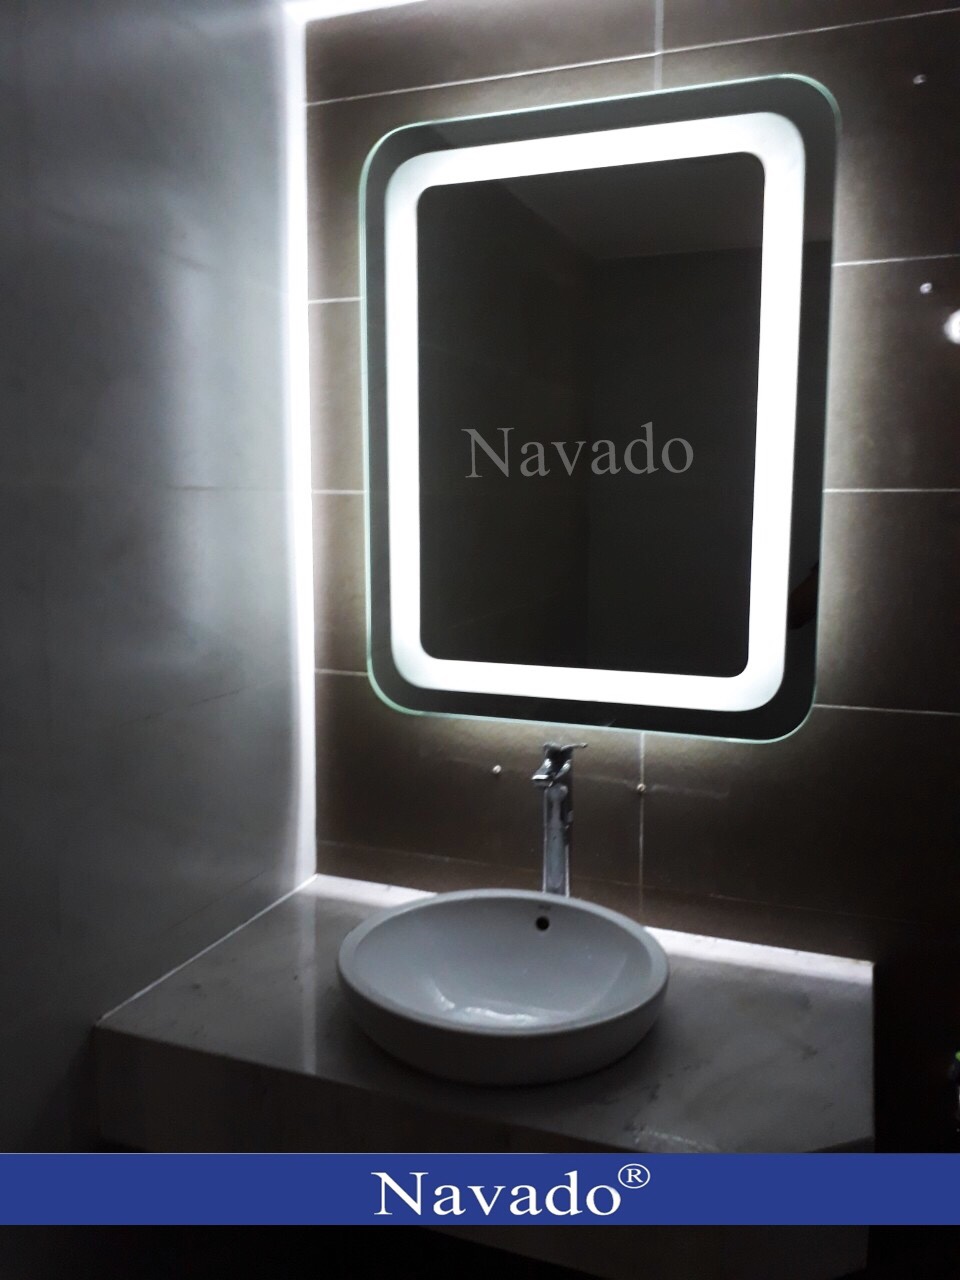 Gương chữ nhật đèn led Navado: Chiếc gương chữ nhật đèn LED Navado vừa đơn giản, vừa sang trọng, sẽ là điểm nhấn cho mọi không gian trang trí. Với ánh sáng trung thực và chính xác, bạn có thể dễ dàng chuẩn bị cho bất kỳ dịp tiệc tùng hay buổi hẹn hò nào.